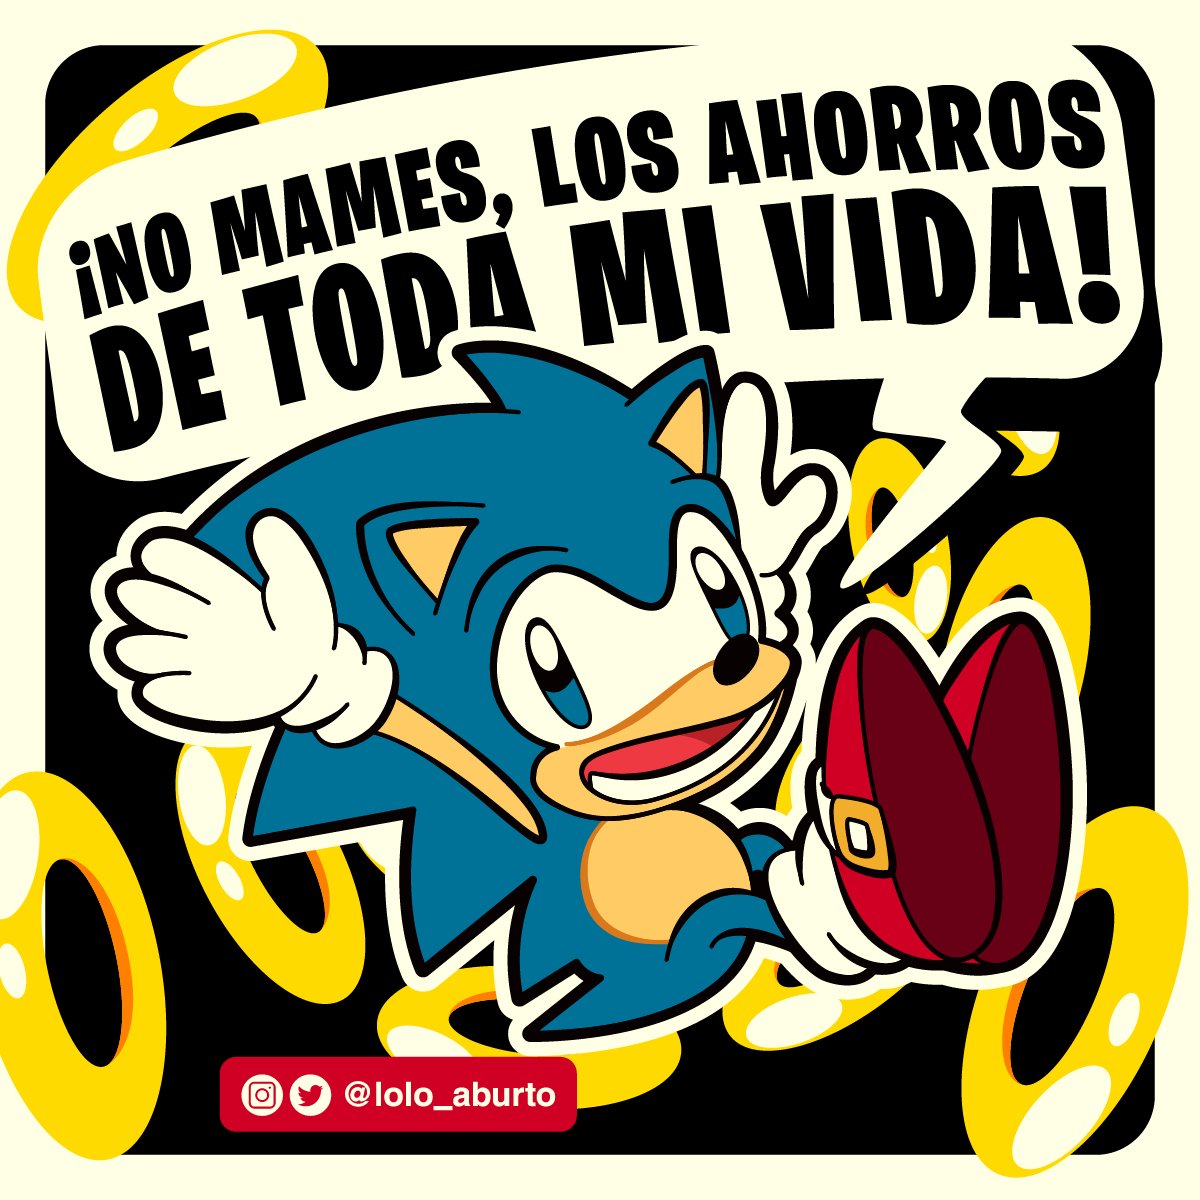 Sonic el Jeshejojo de @ralnegas